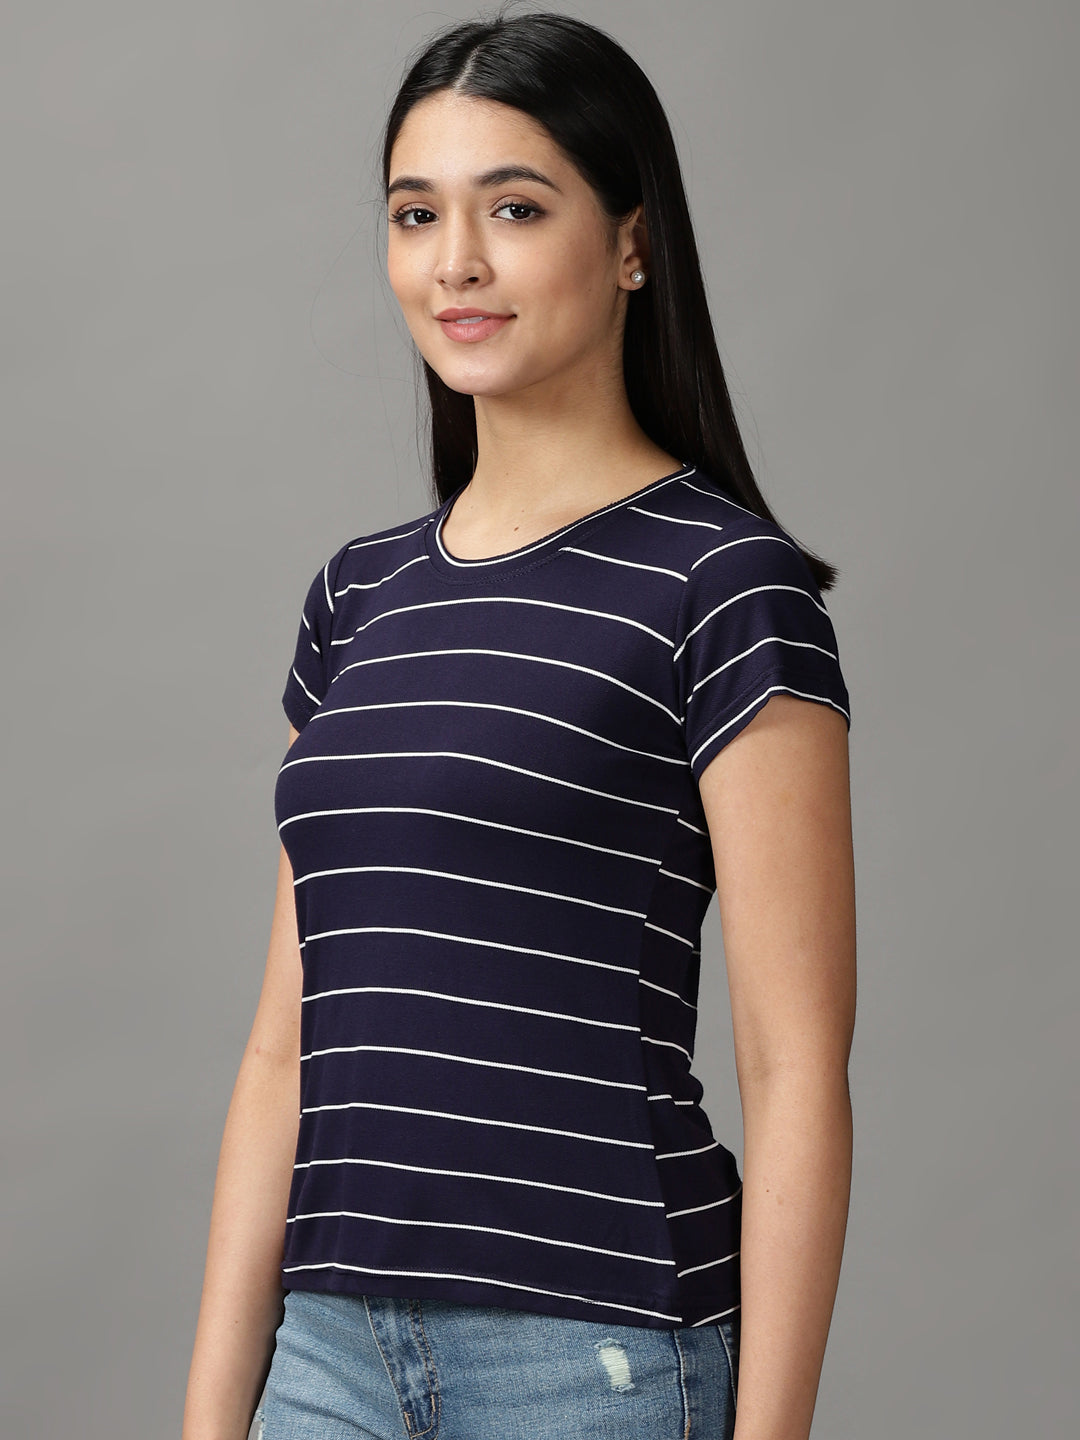 Women's Blue Striped Top